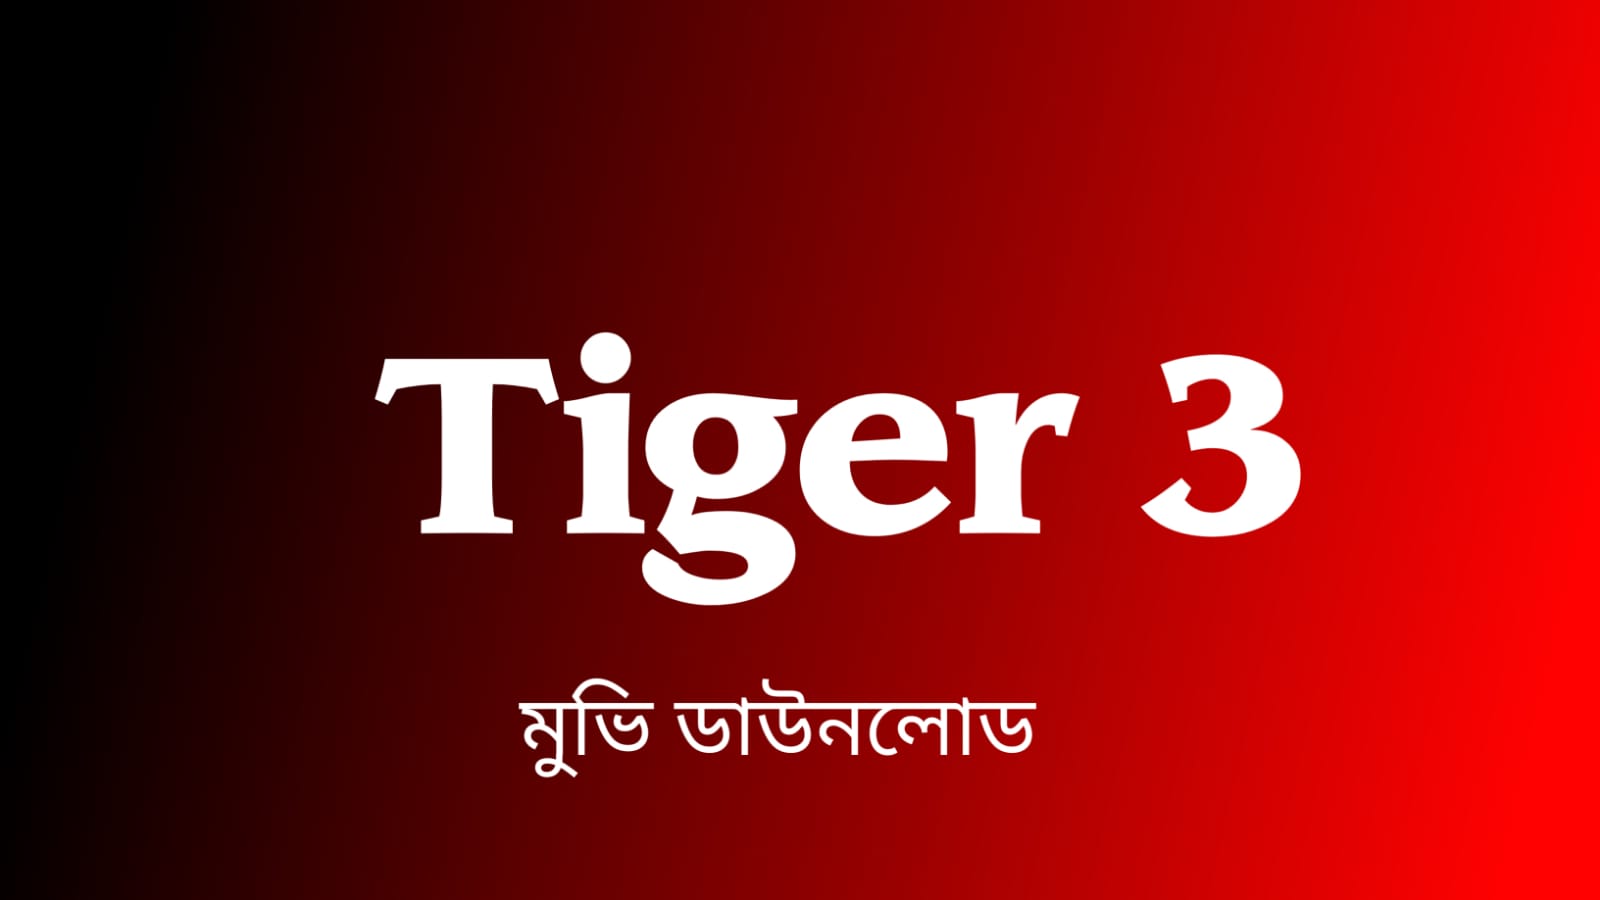 টাইগার থ্রি মুভি ডাউনলোড | Tiger 3 Movie Download Links